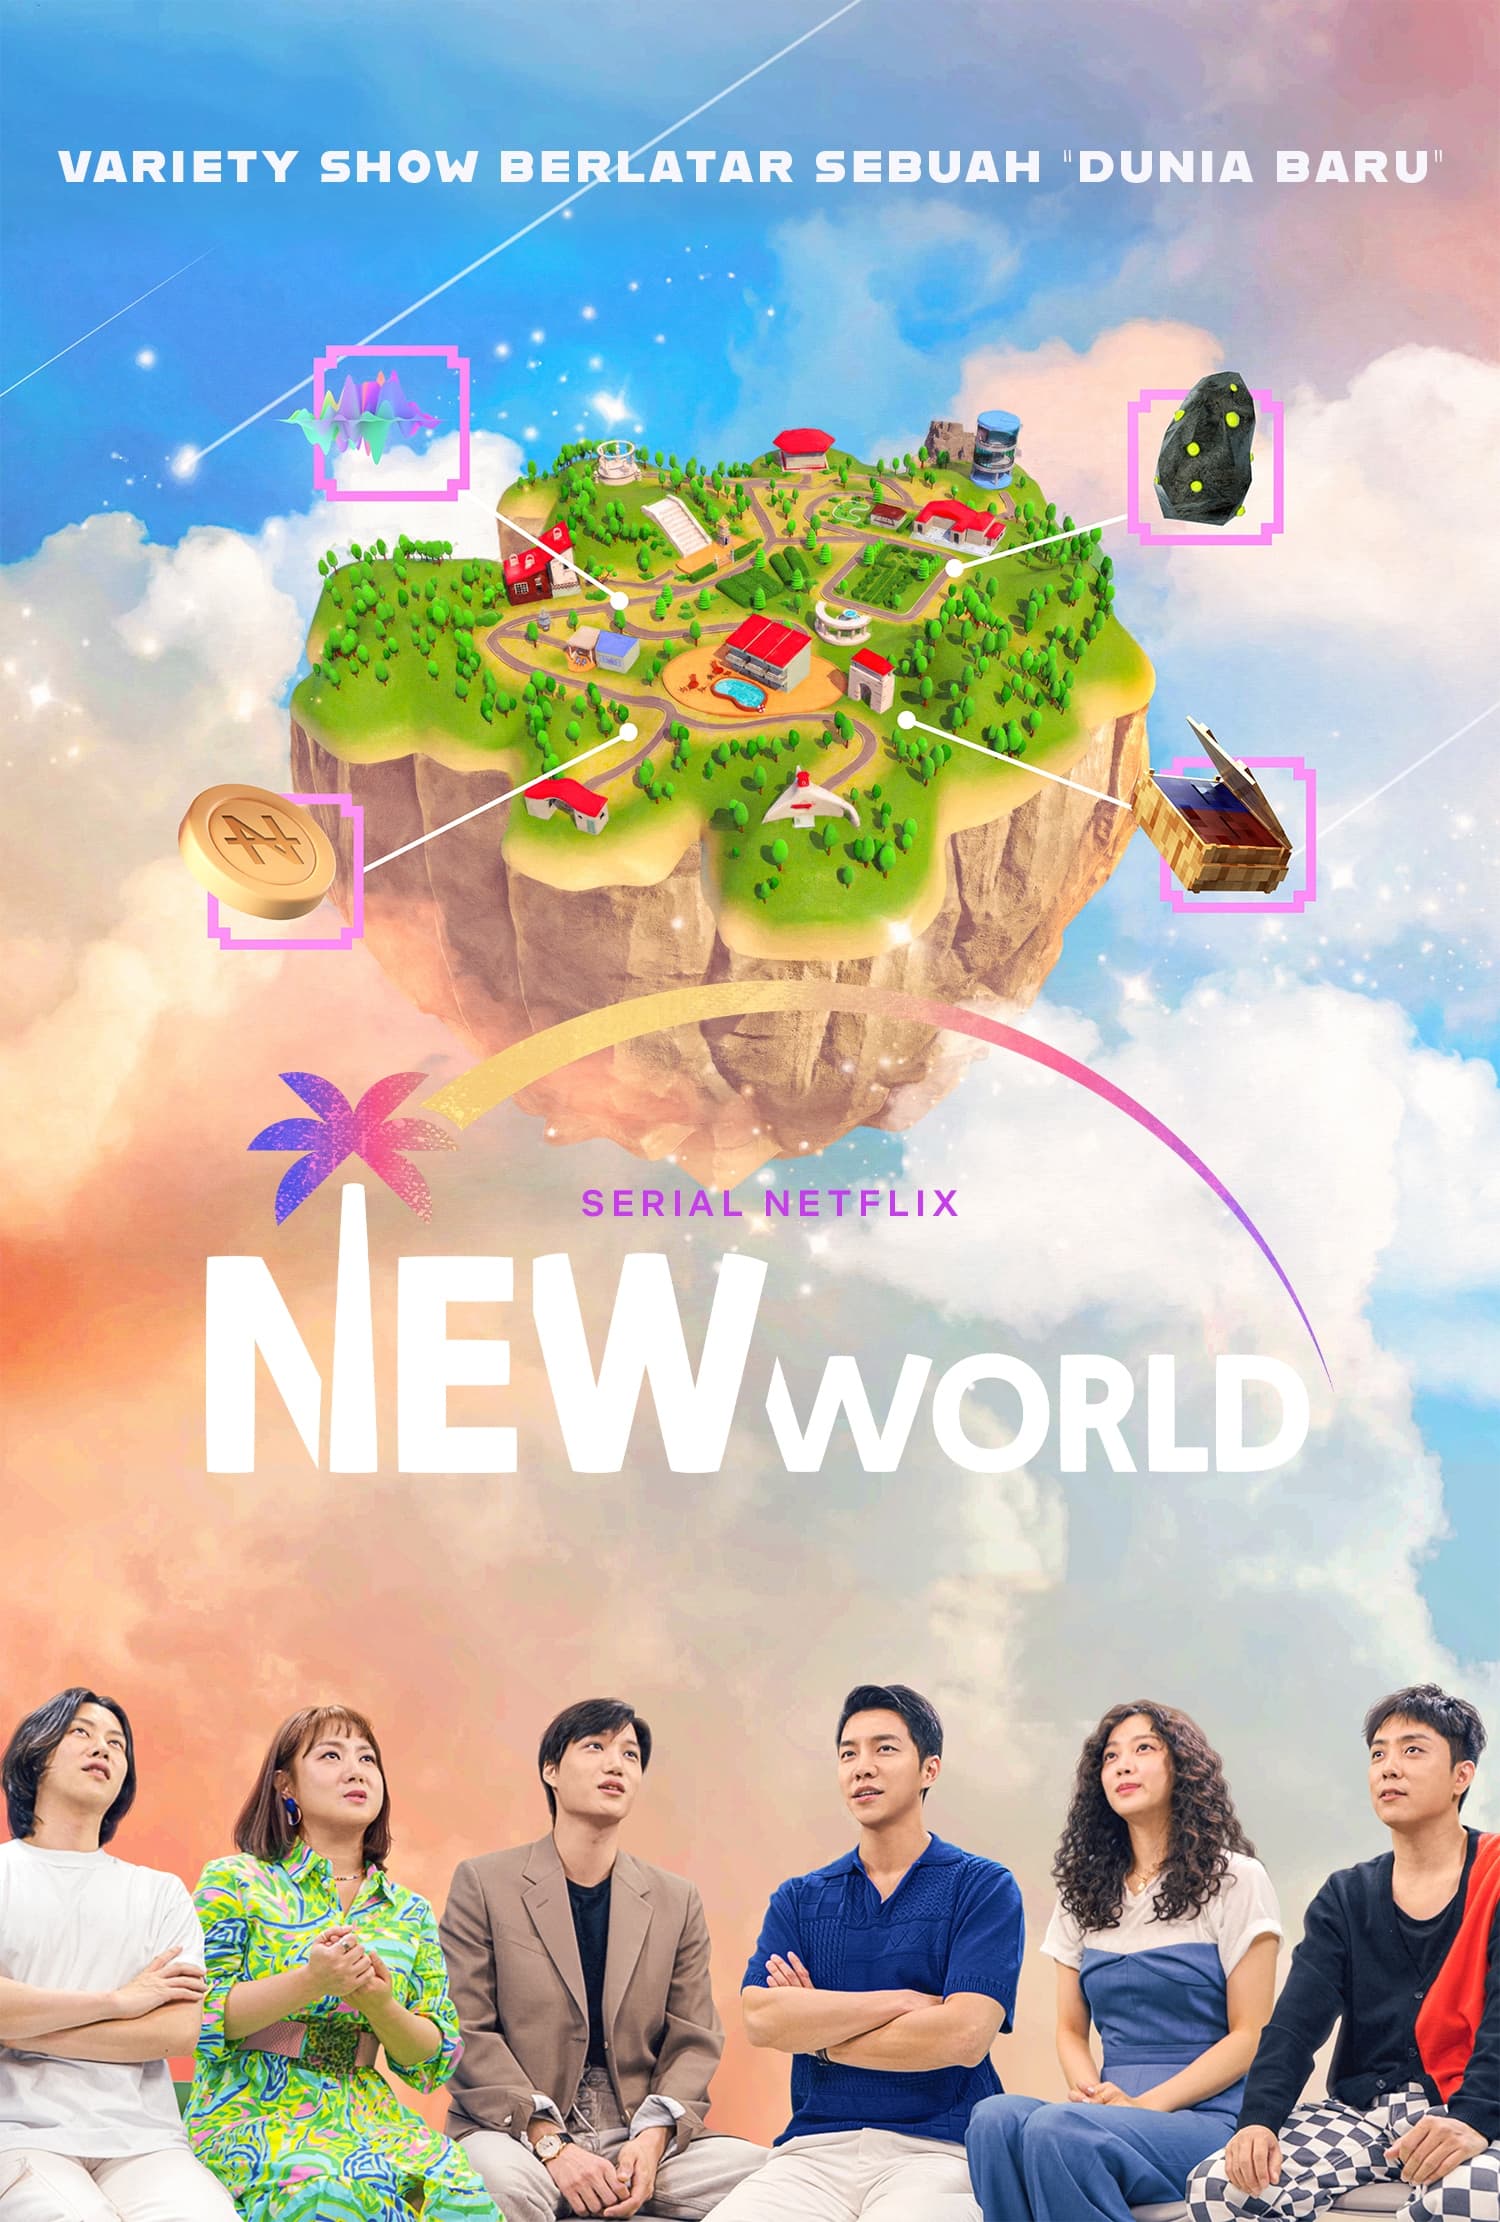 مشاهدة مسلسل العالم الجديد New World الحلقة 1 الاولي